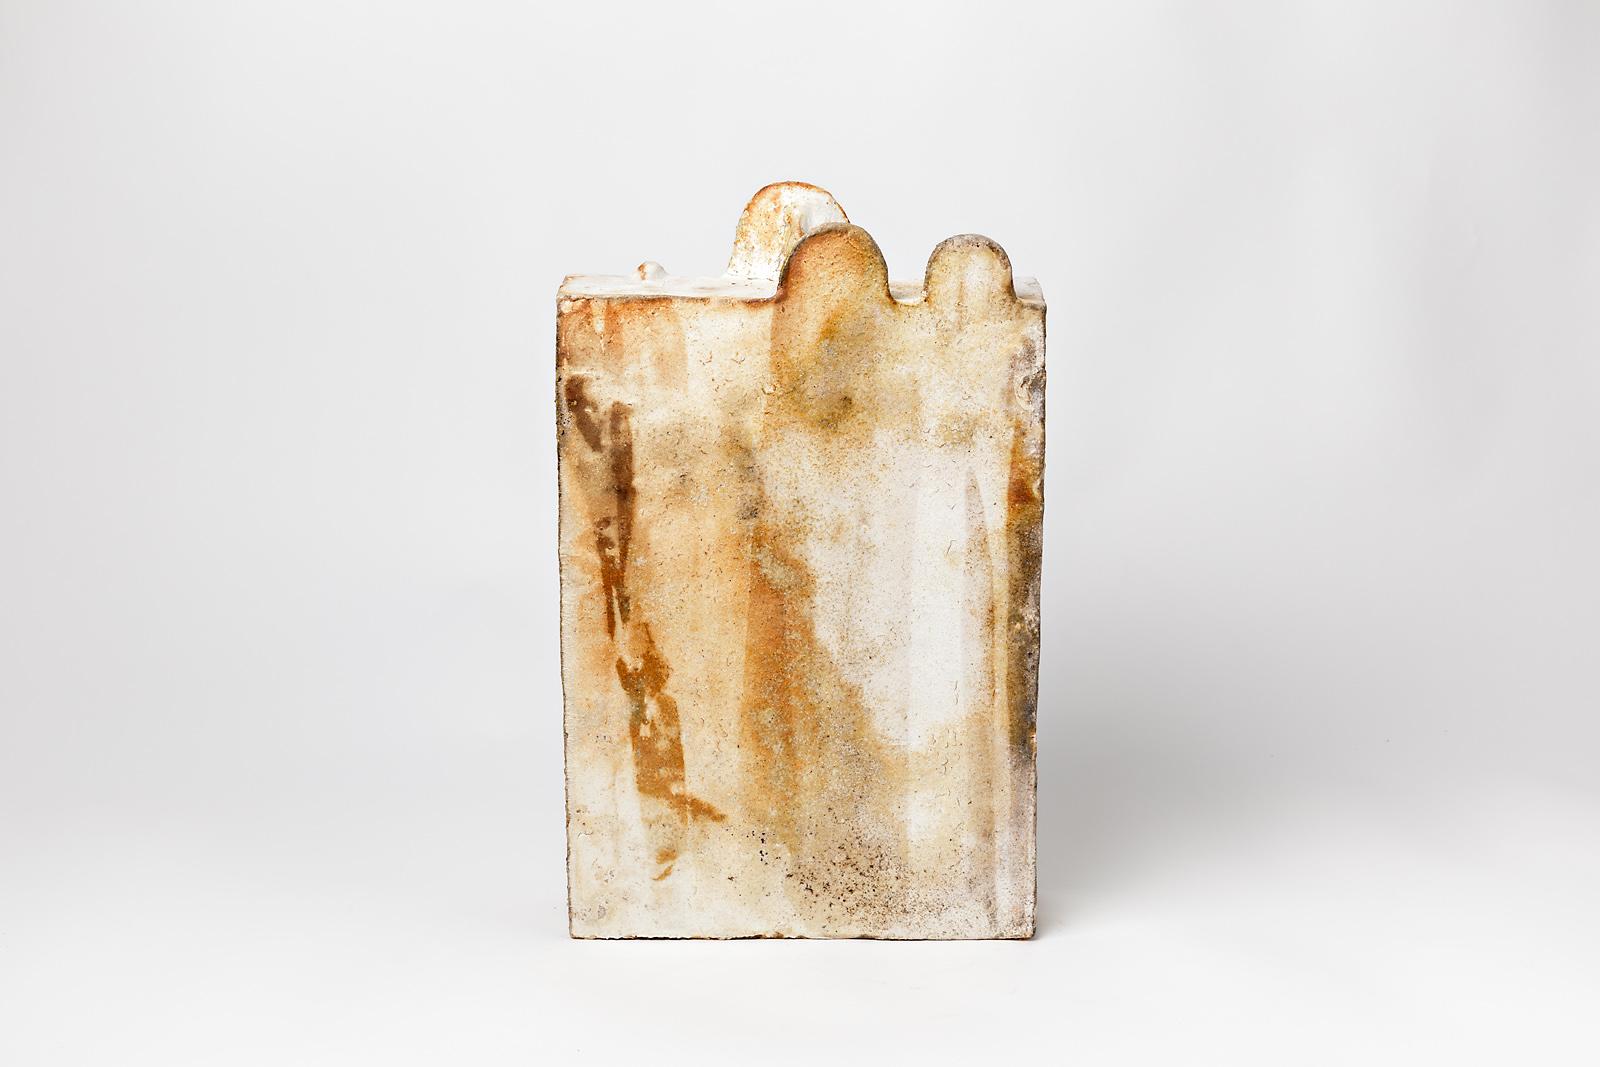 Von Regnier, in La Borne

Moderne Keramikskulptur aus Steinzeug aus dem Jahr 2018.

Braunes und weißes Steingut, Holzbrand, Keramikfarben.

Eine architektonische Form, die in La Borne, der berühmten französischen Keramikstadt, realisiert